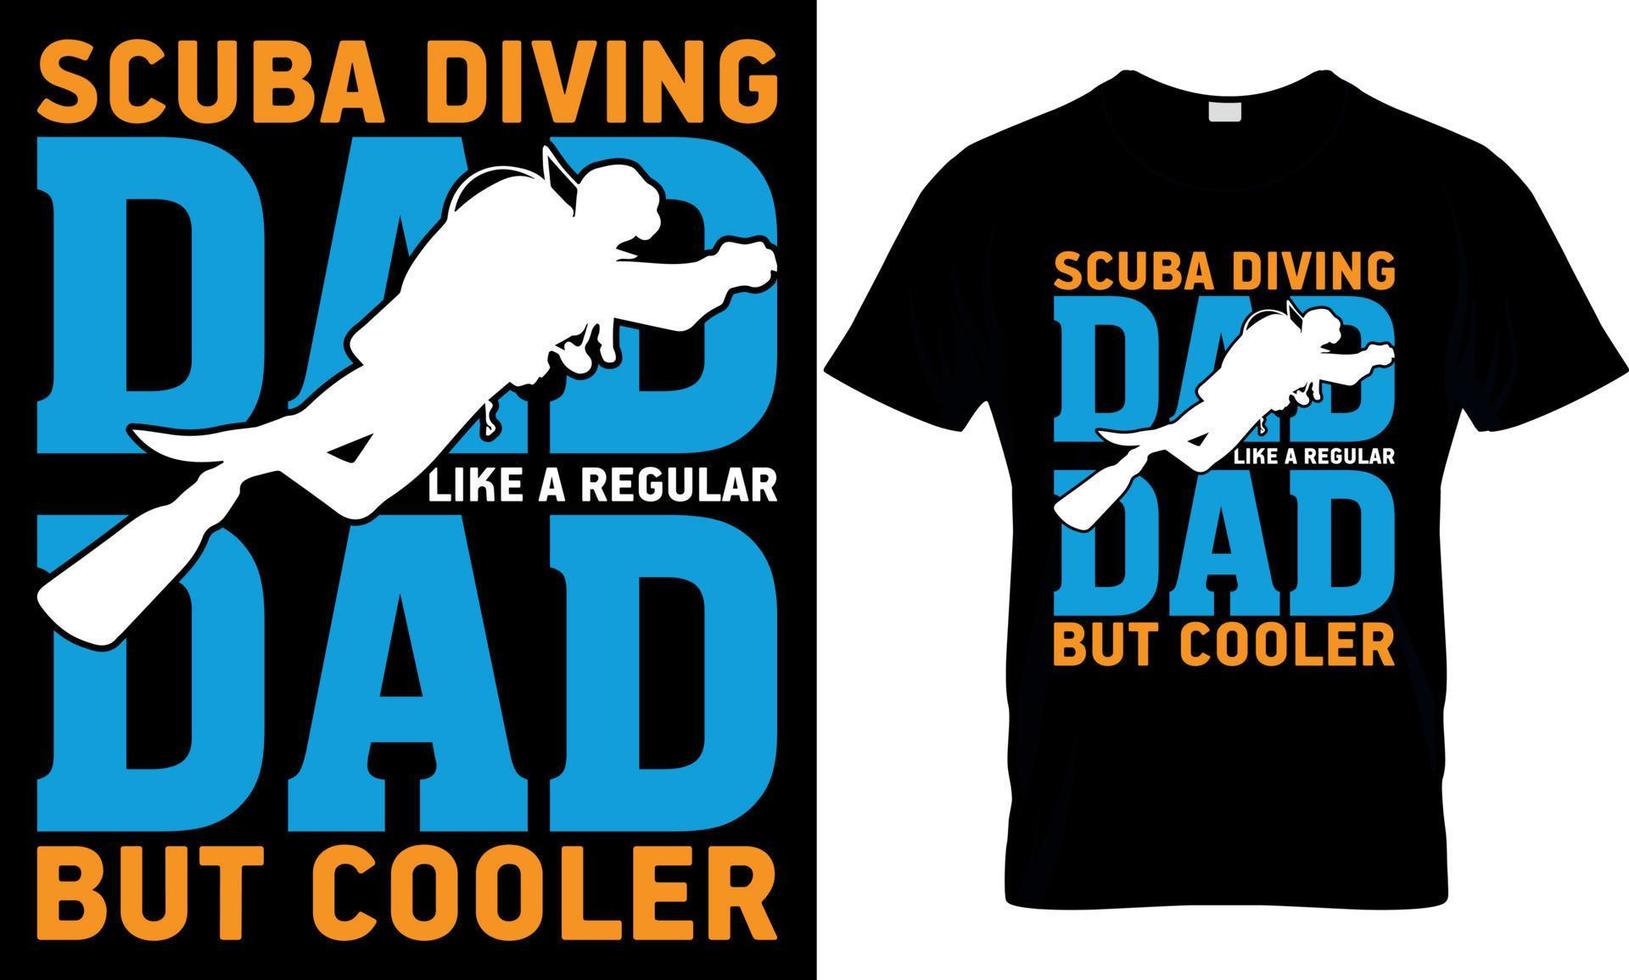 mergulho mergulho tipografia camiseta Projeto com editável vetor gráfico. mergulho mergulho Papai gostar uma regular Papai mas resfriador